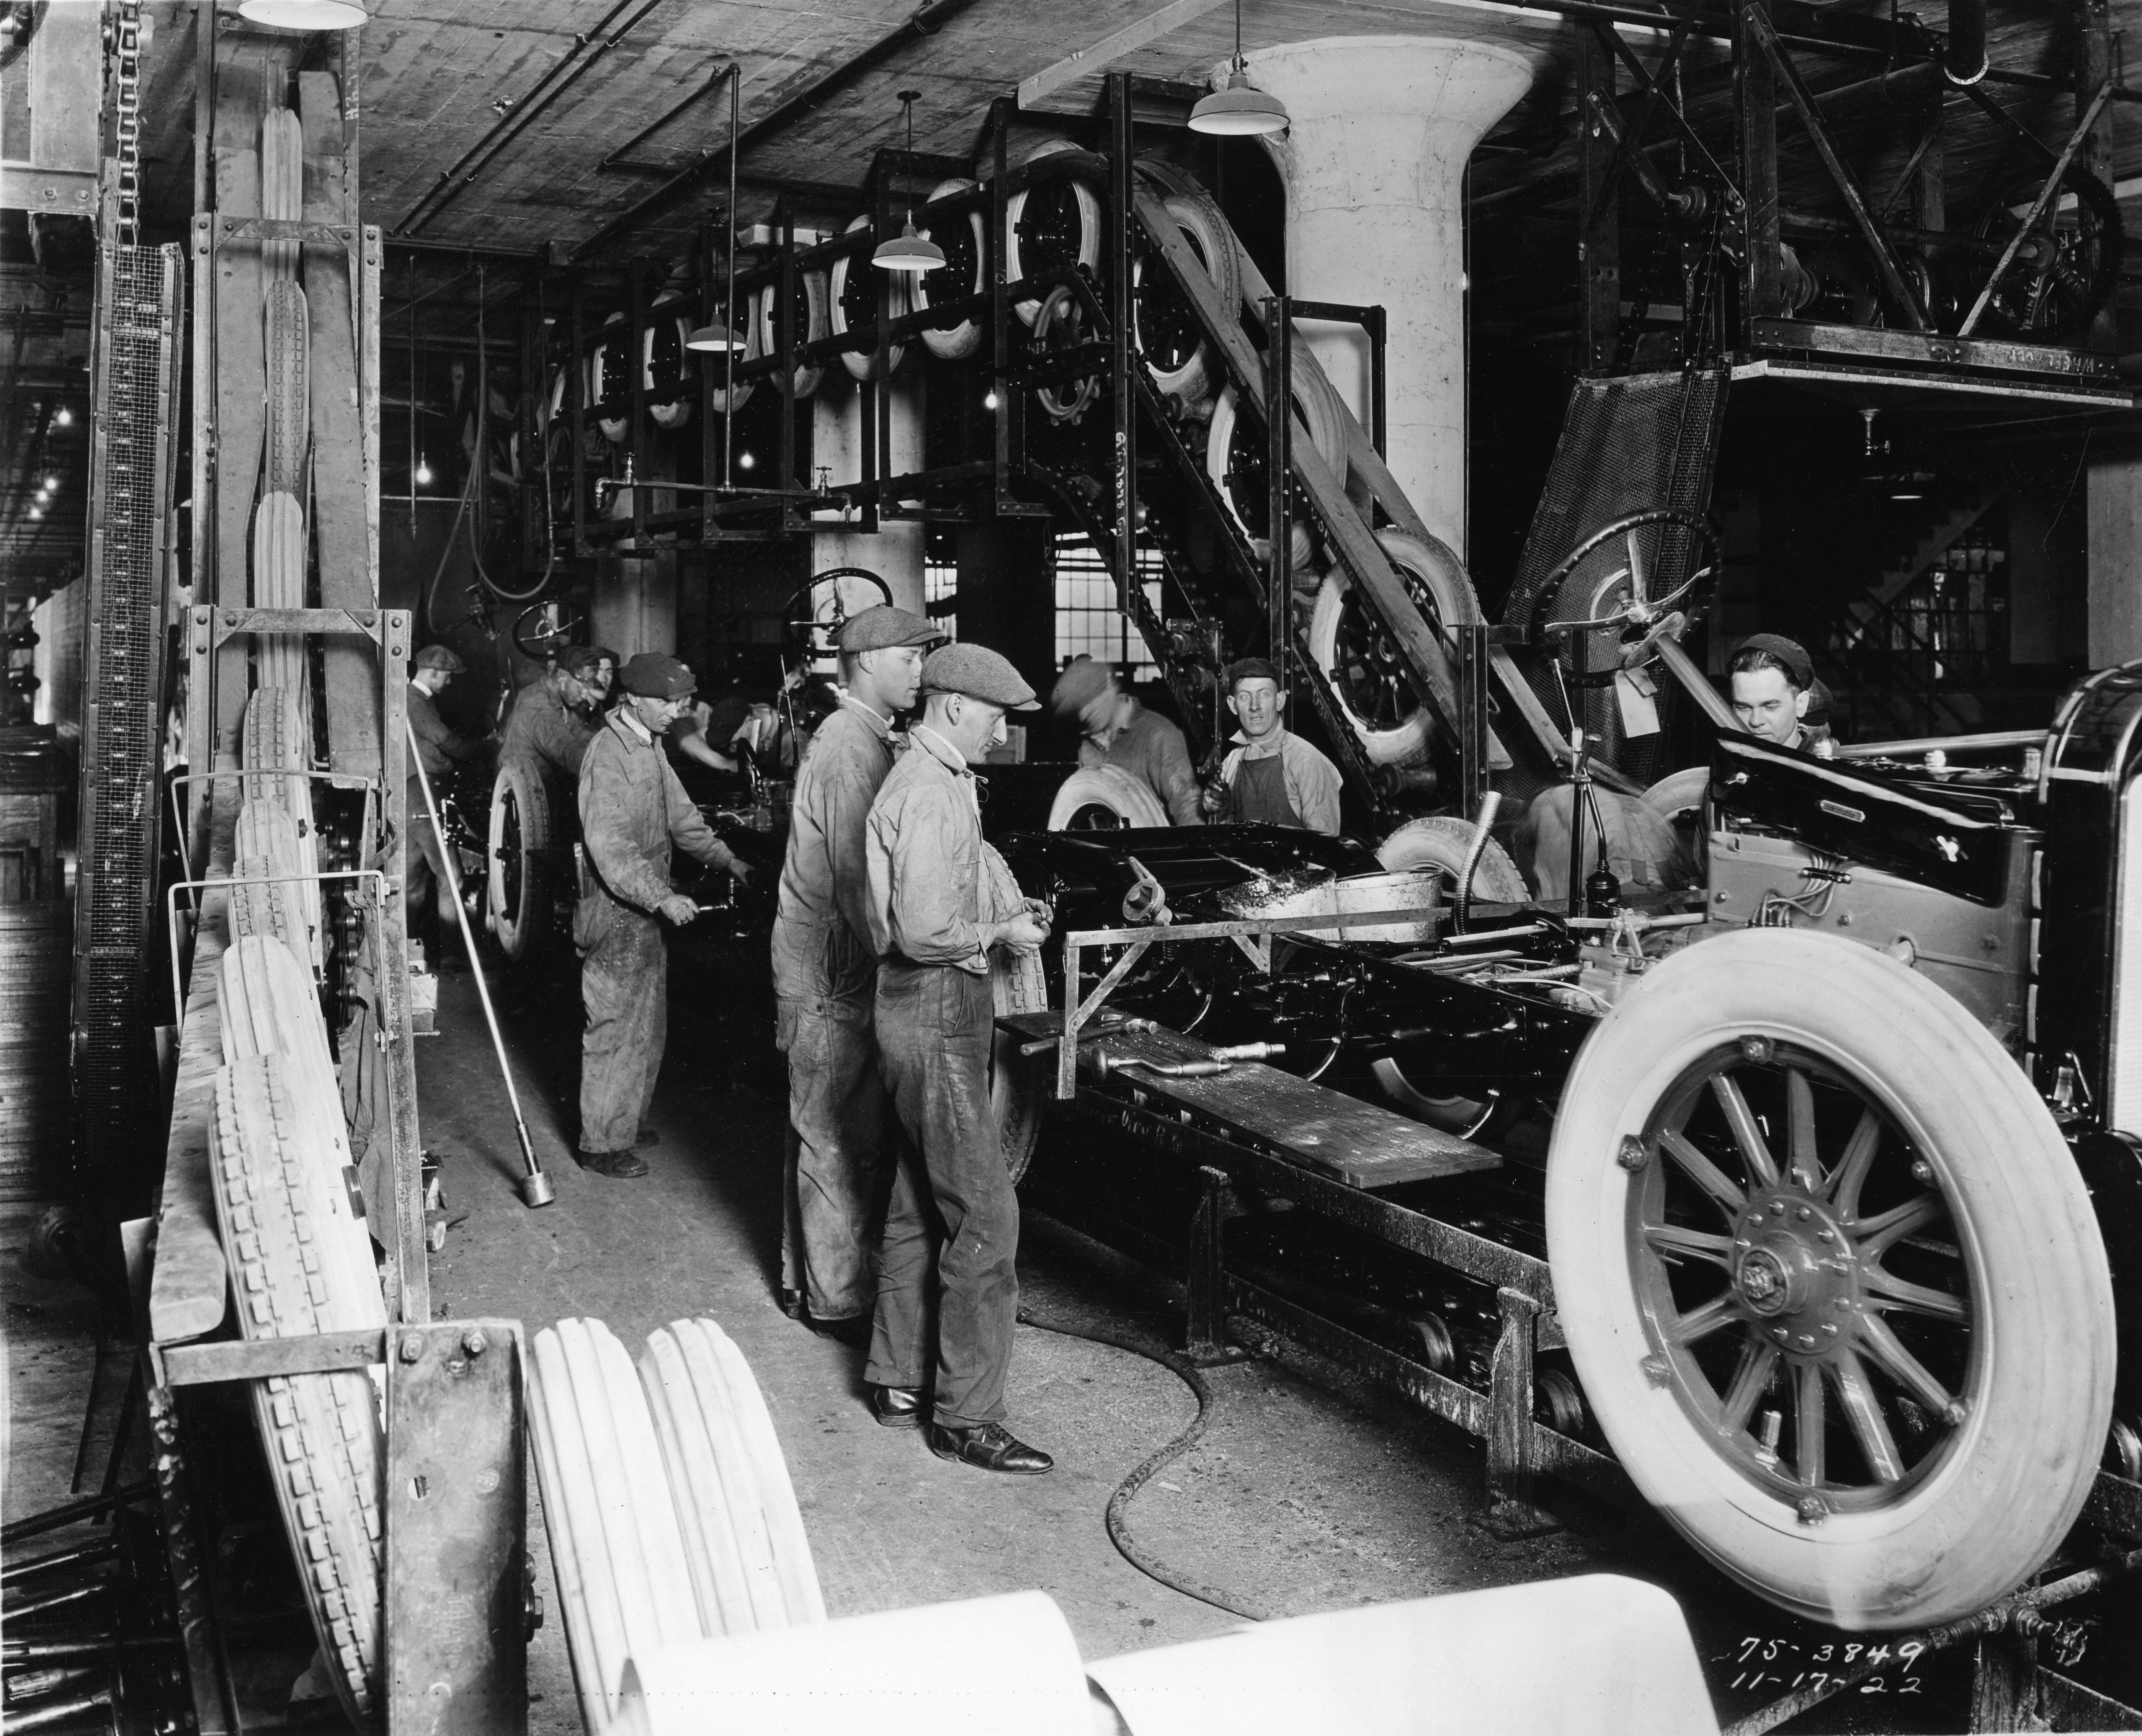 تاریخچه خط تولید خودرو